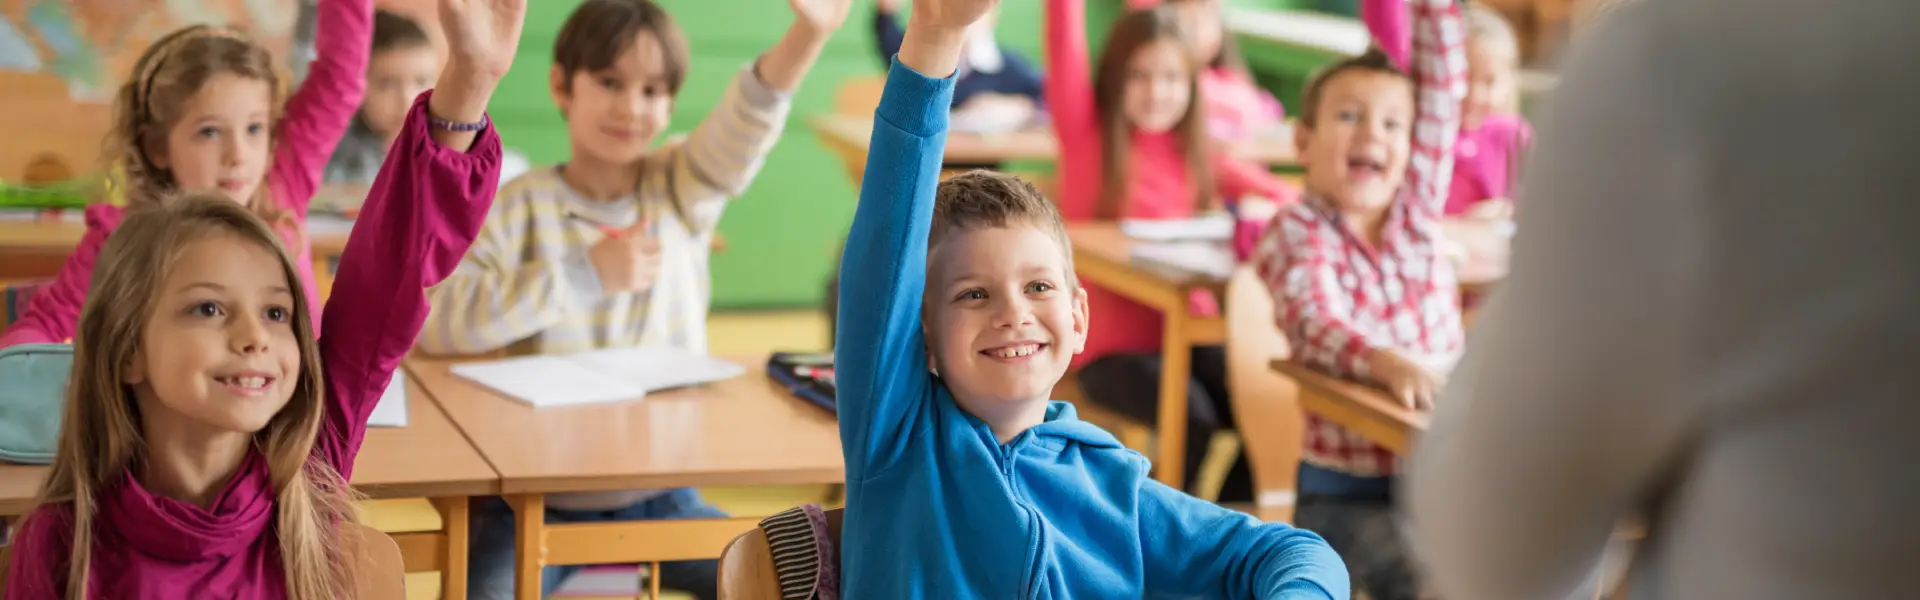 Dzieci w klasie podnoszące ręce